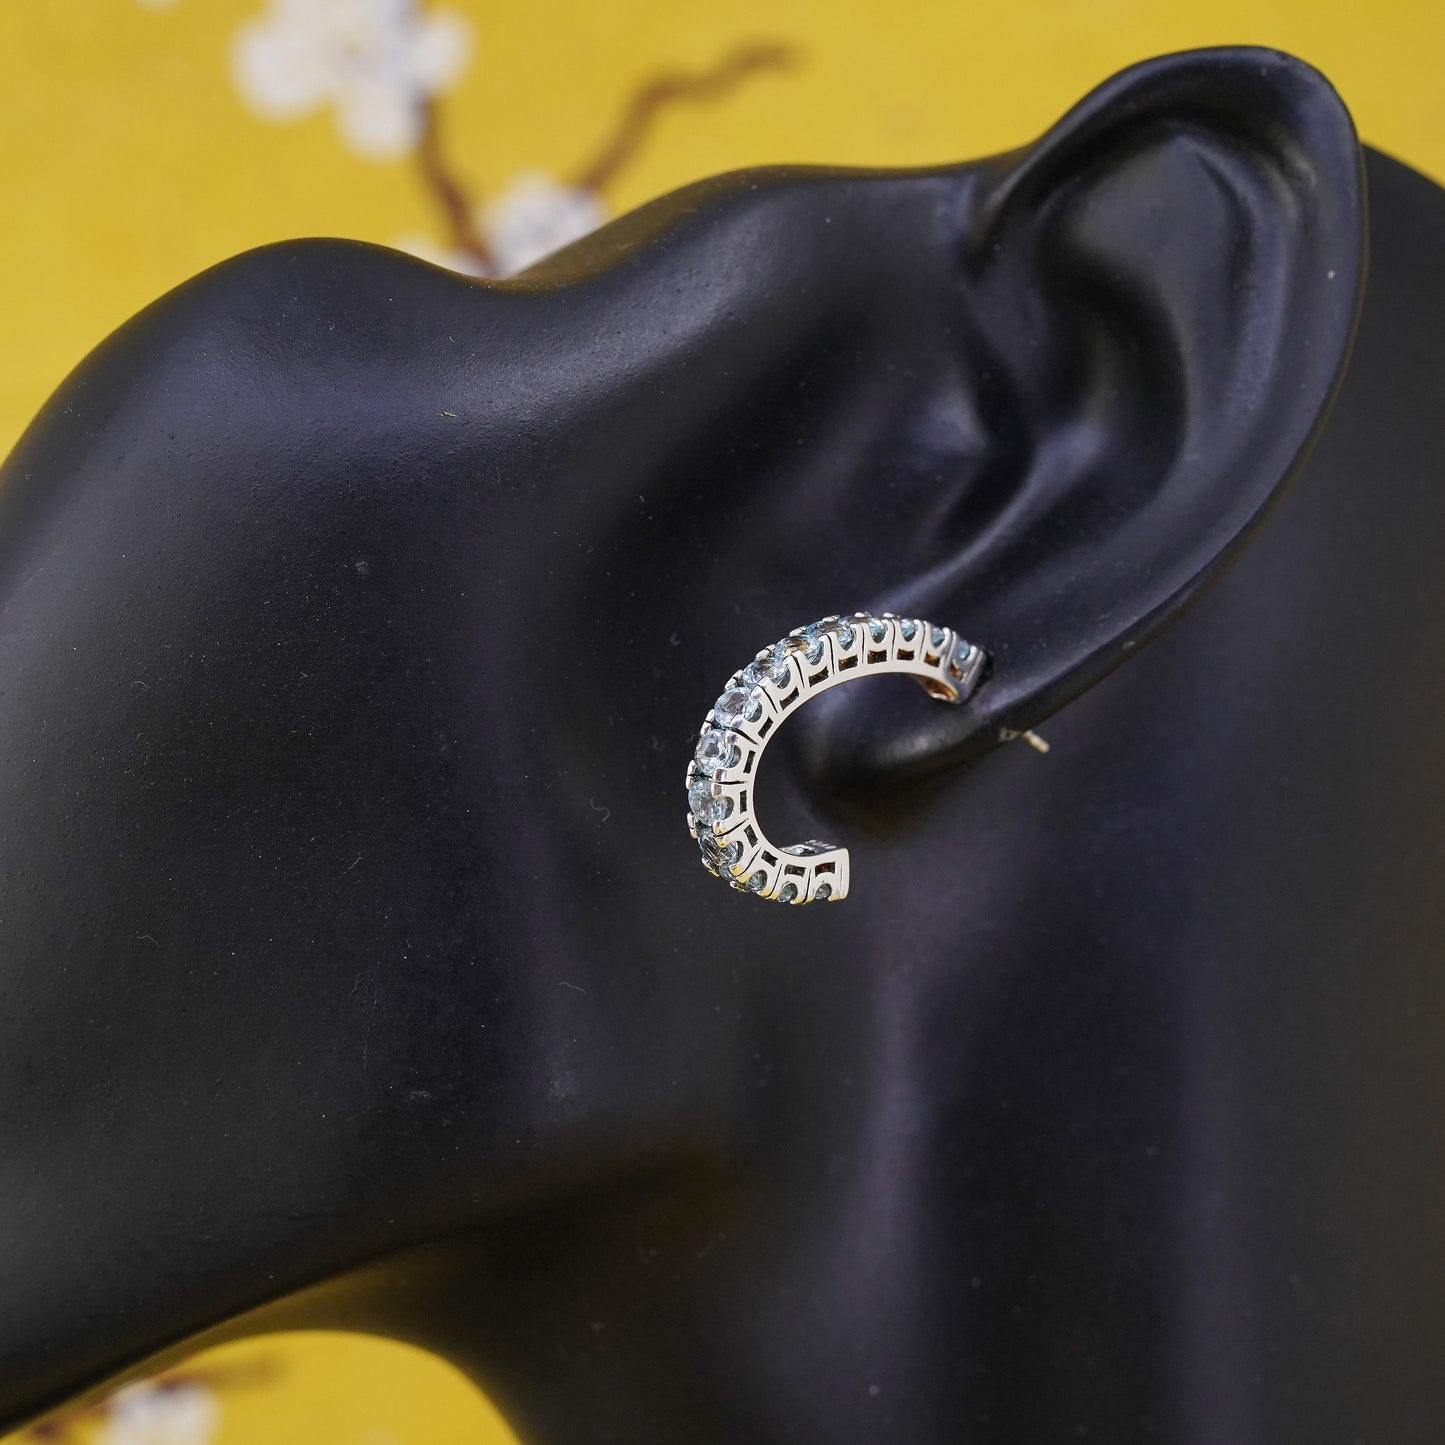 1", vintage Sterling silver huggie earrings, 925 studs with blue crystal